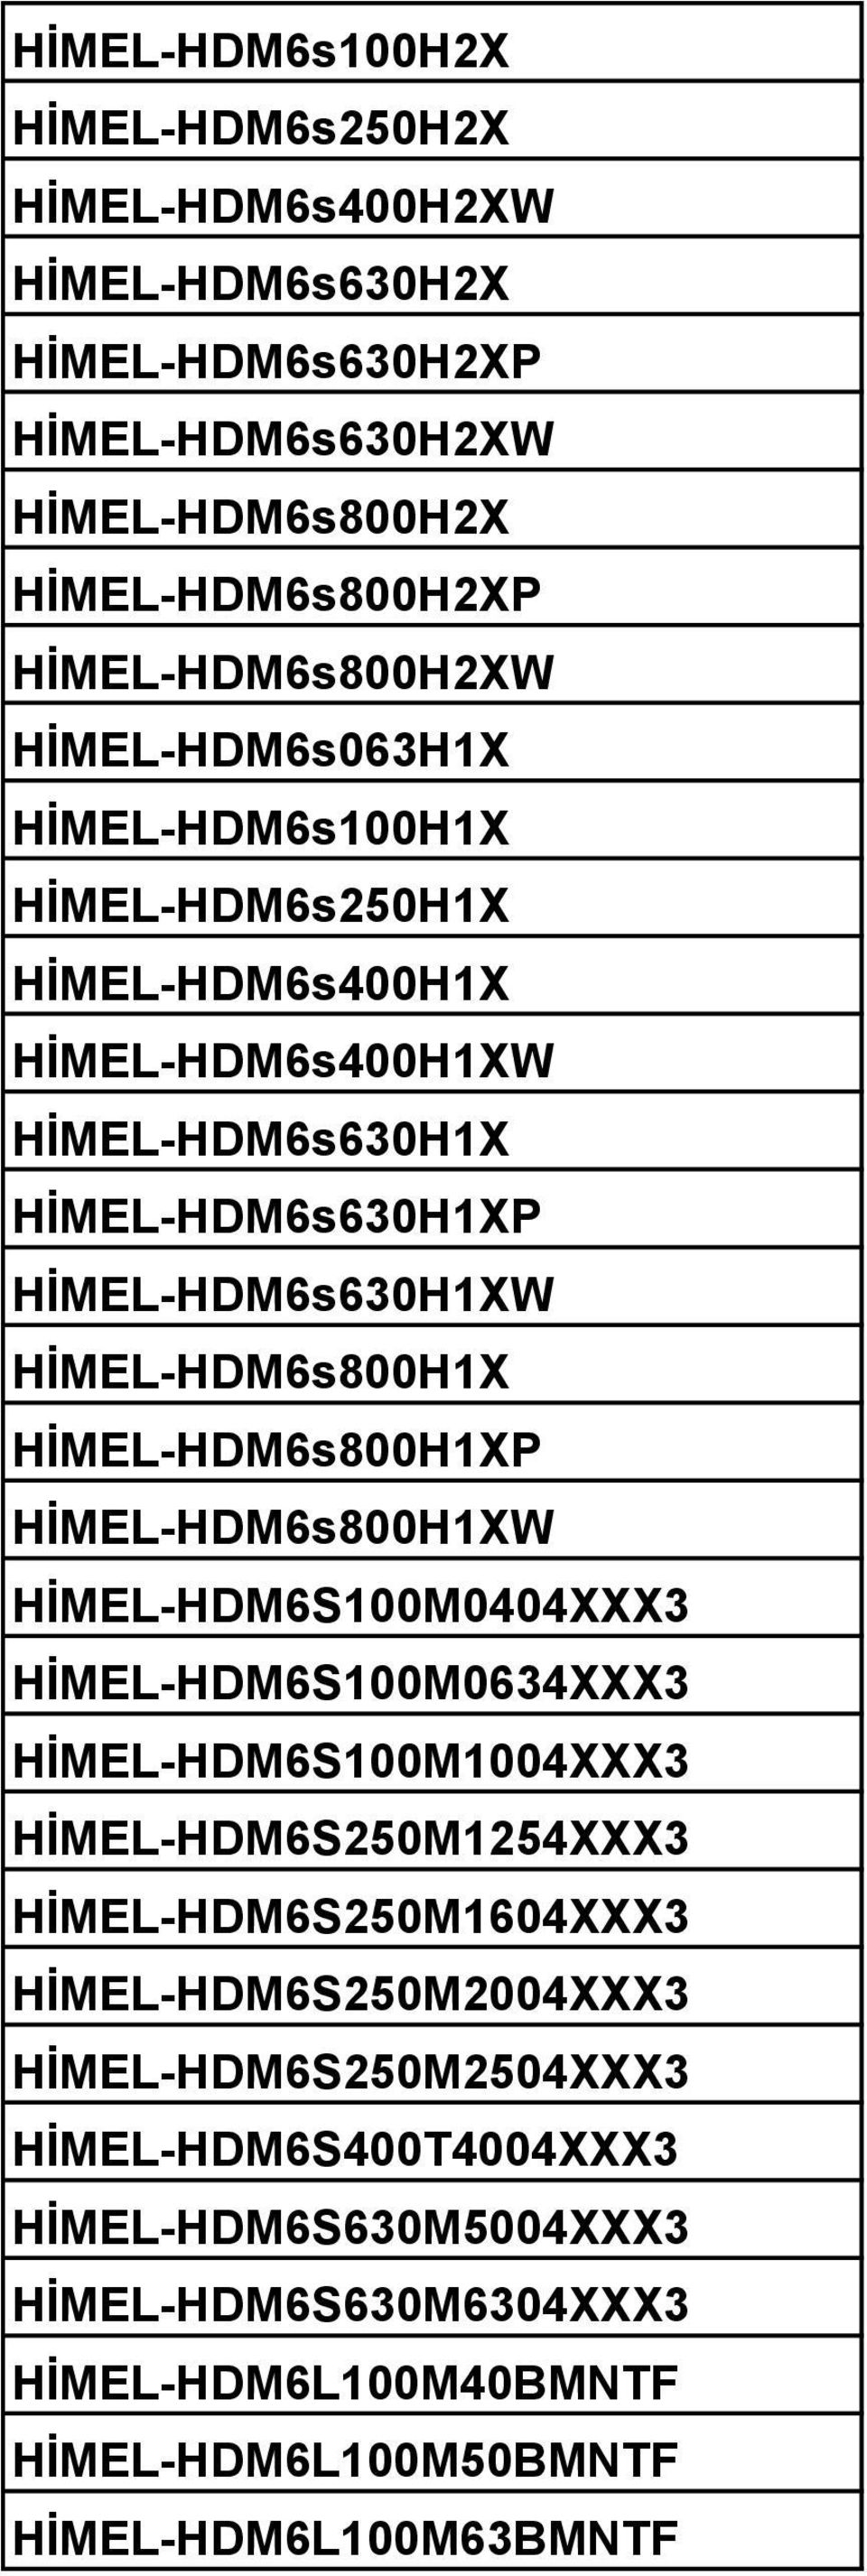 HİMEL-HDM6s800H1XP HİMEL-HDM6s800H1XW HİMEL-HDM6S100M0404XXX3 HİMEL-HDM6S100M0634XXX3 HİMEL-HDM6S100M1004XXX3 HİMEL-HDM6S250M1254XXX3 HİMEL-HDM6S250M1604XXX3